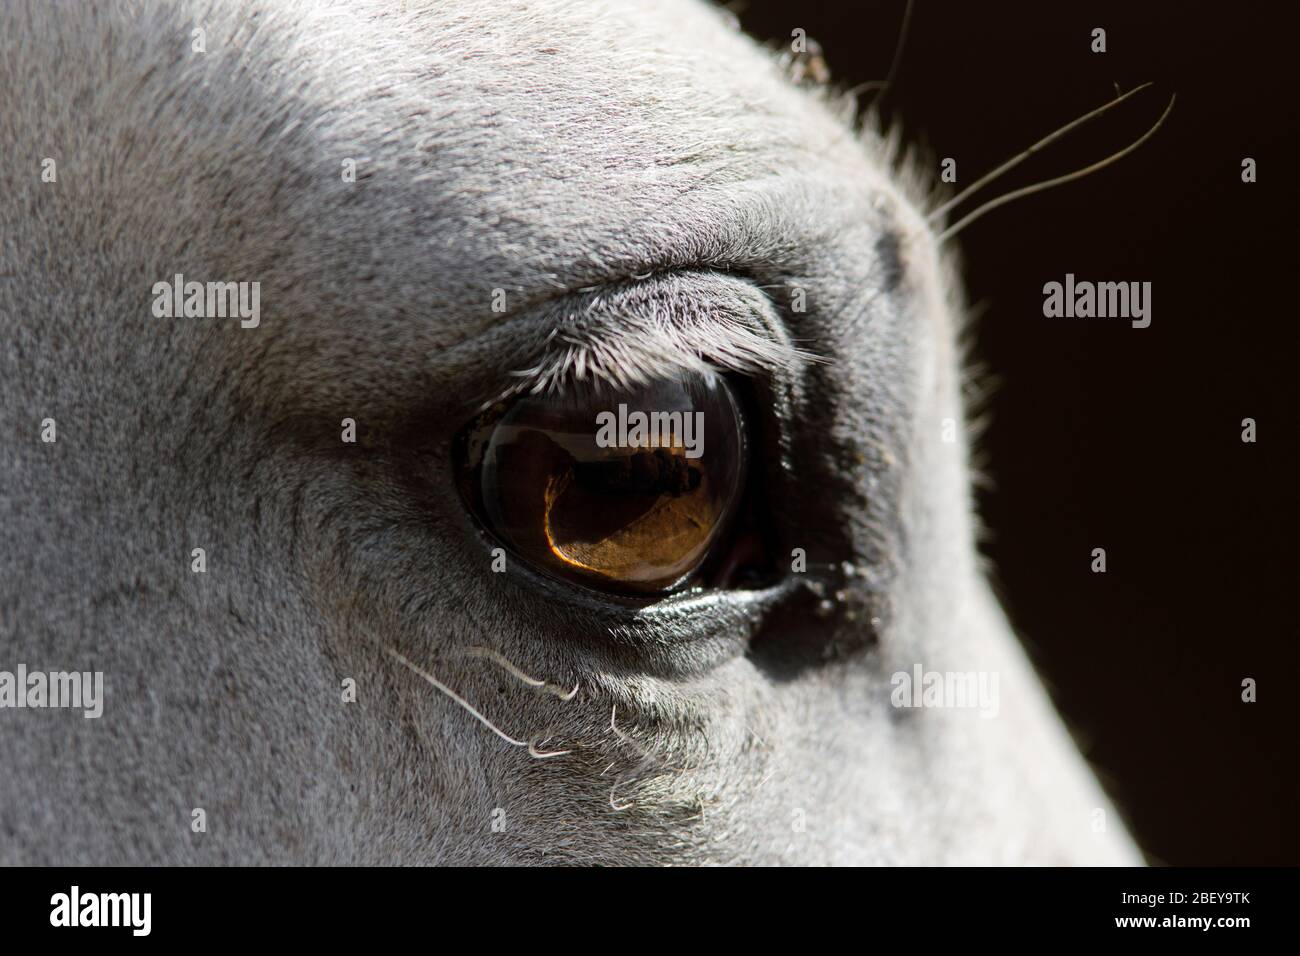 Nahaufnahme Porträt des Auges eines weißen spanischen Pferdes in der Box Stockfoto